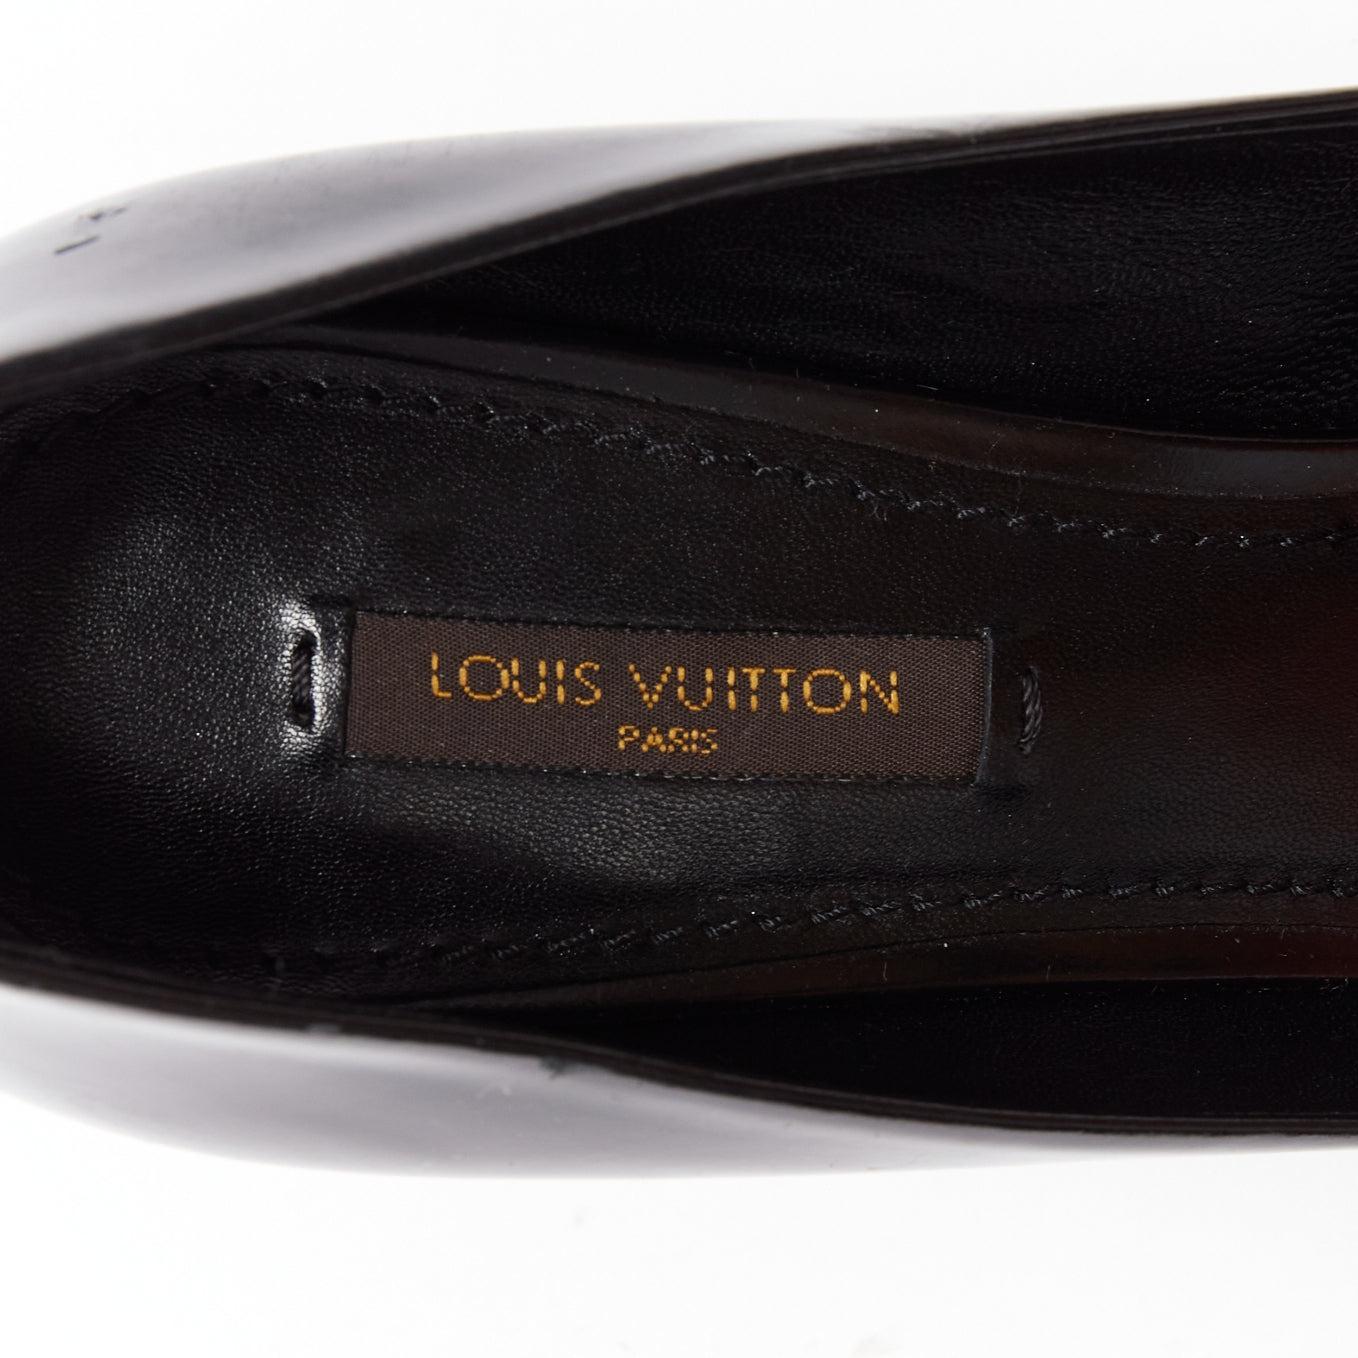 LOUIS VUITTON Marc Jacobs gold LV button black leather pumps EU38 4